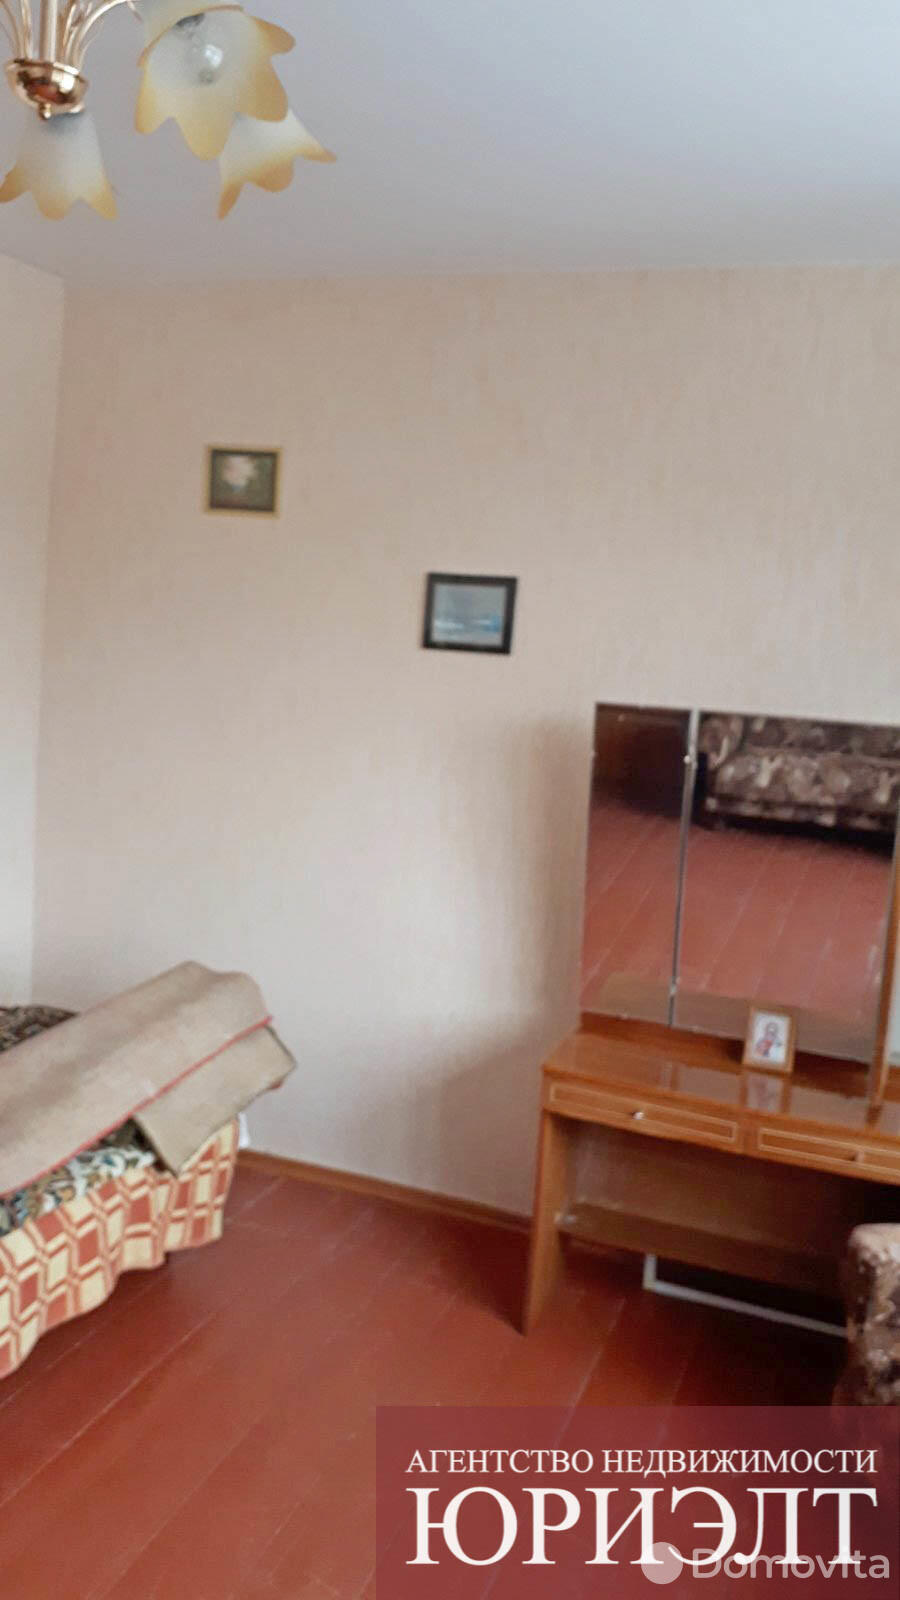 Купить комнату в Борисове, ул. Серебренникова, д. 2, цена 6200 USD, код 6162 - фото 3